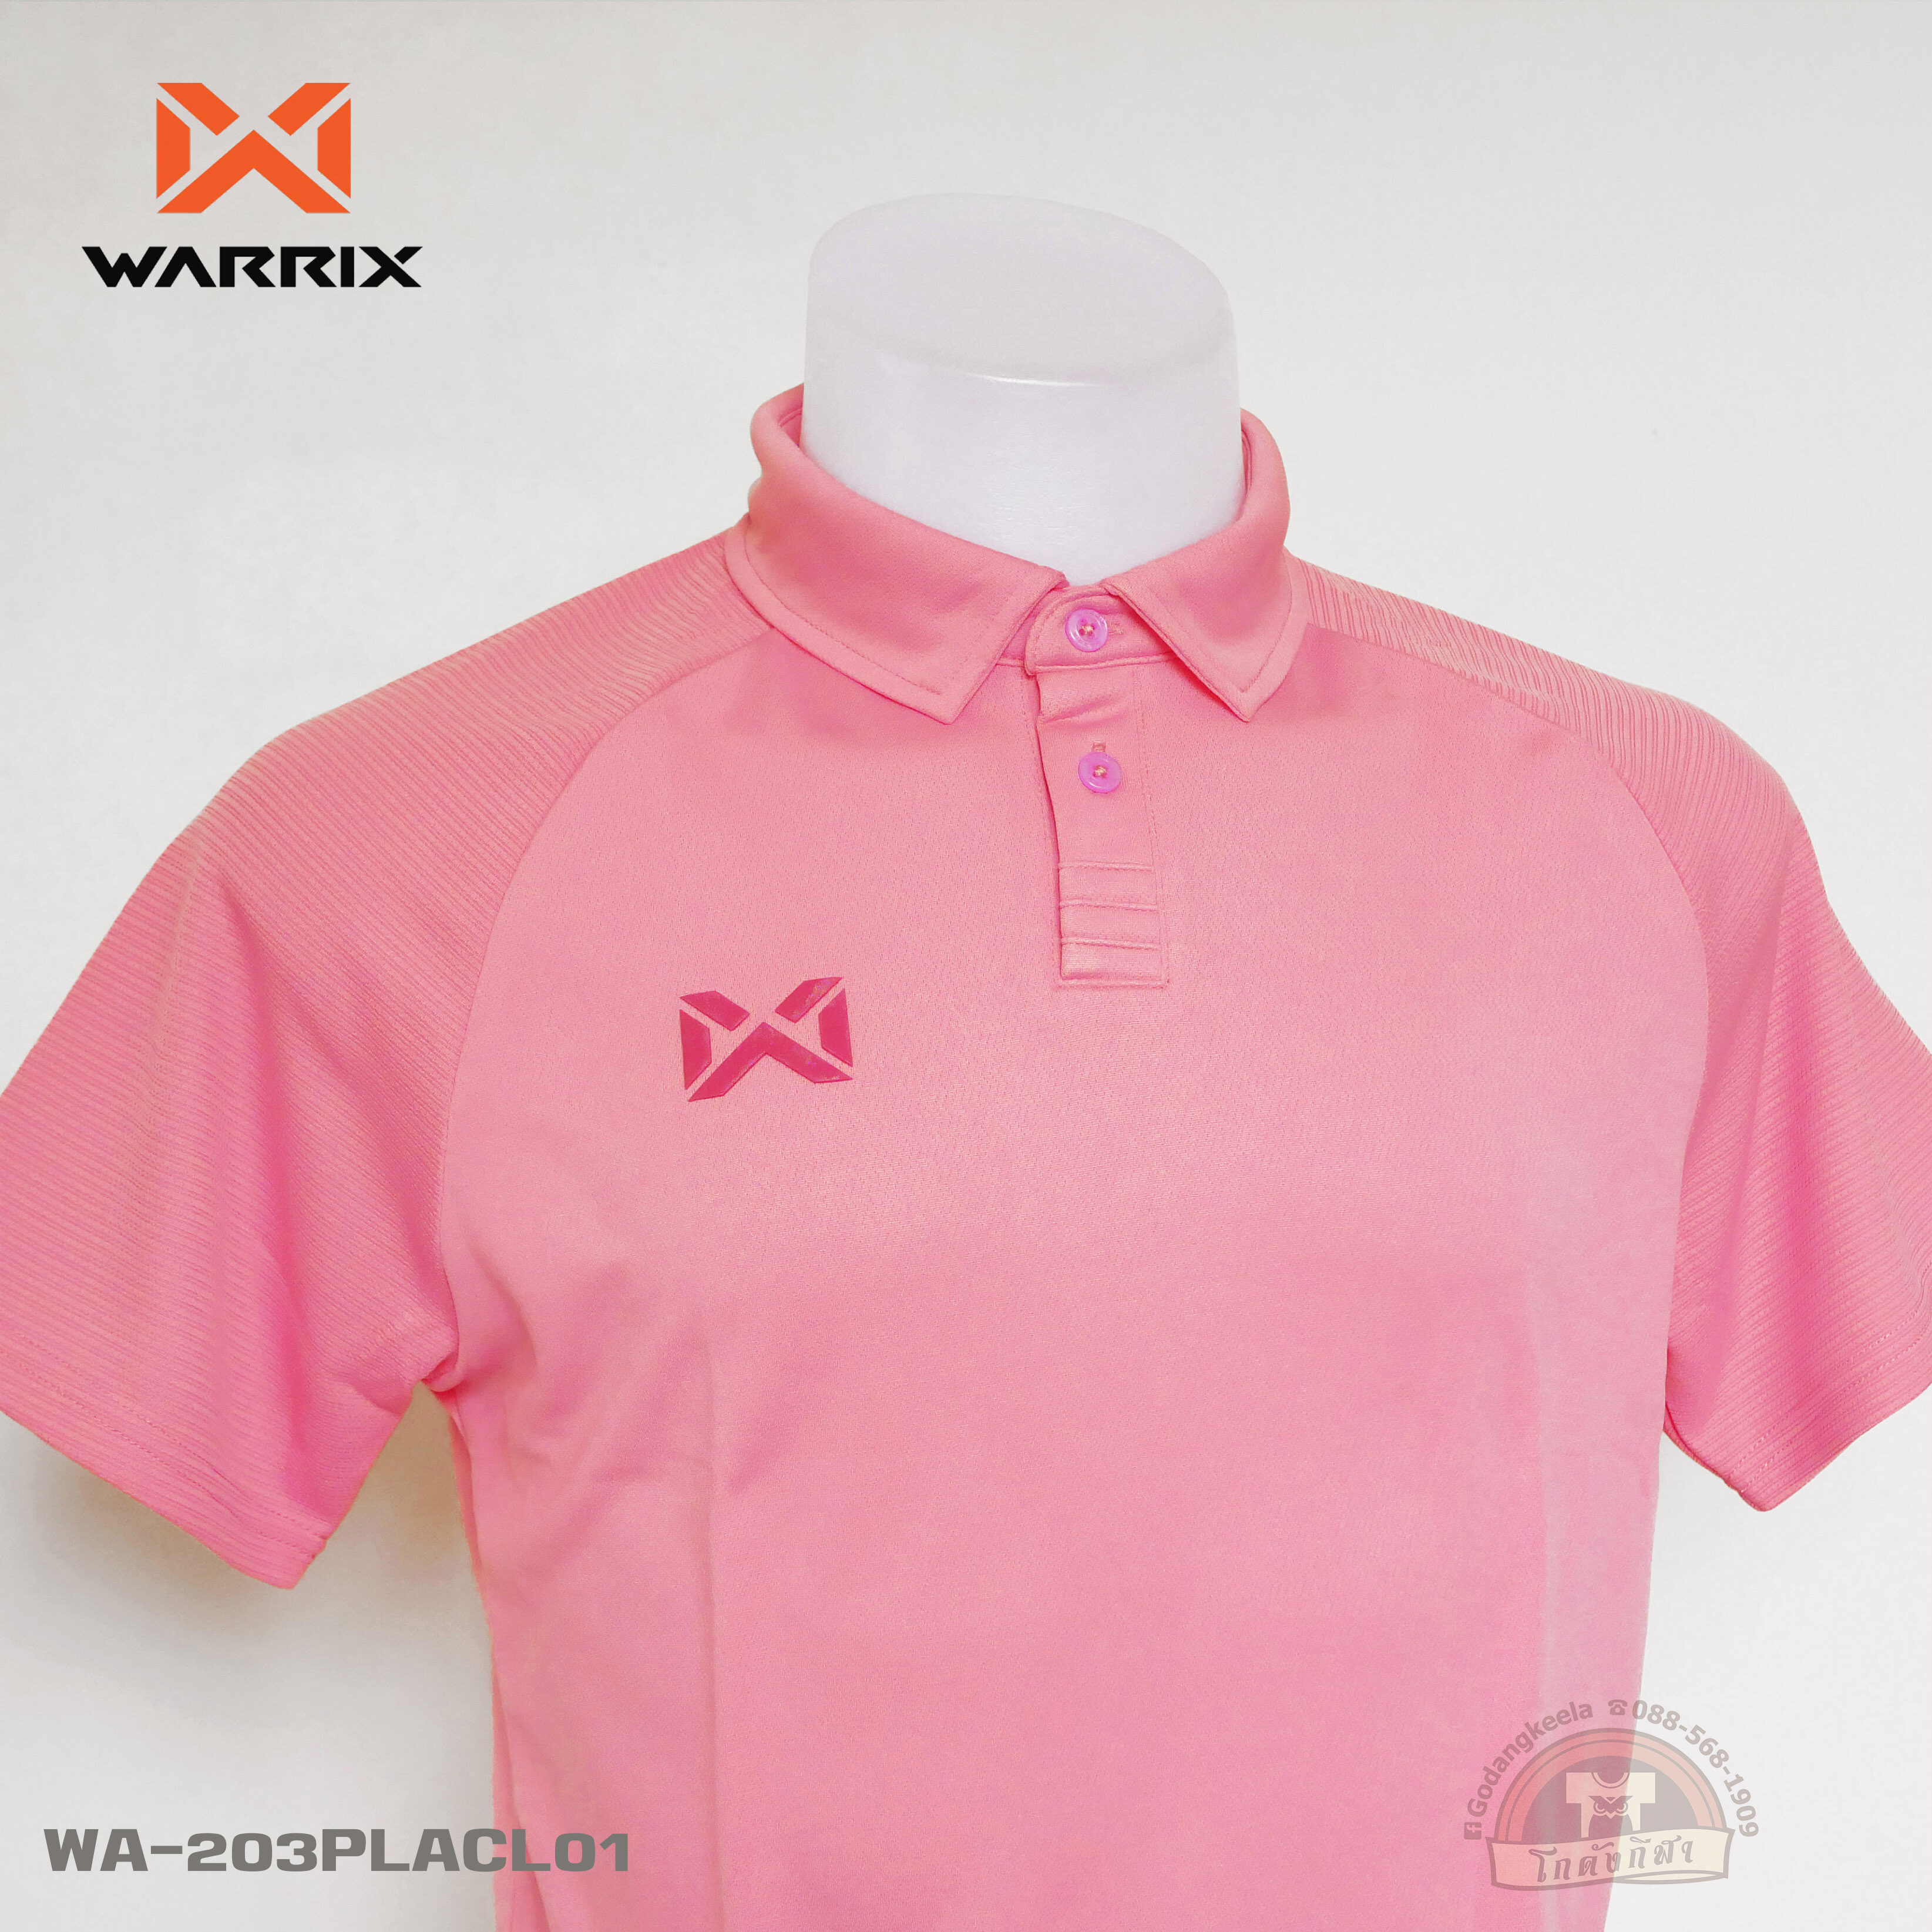 WARRIX เสื้อโปโล WA-203PLACL01 วอริกซ์ วาริกซ์ ของแท้ 100%